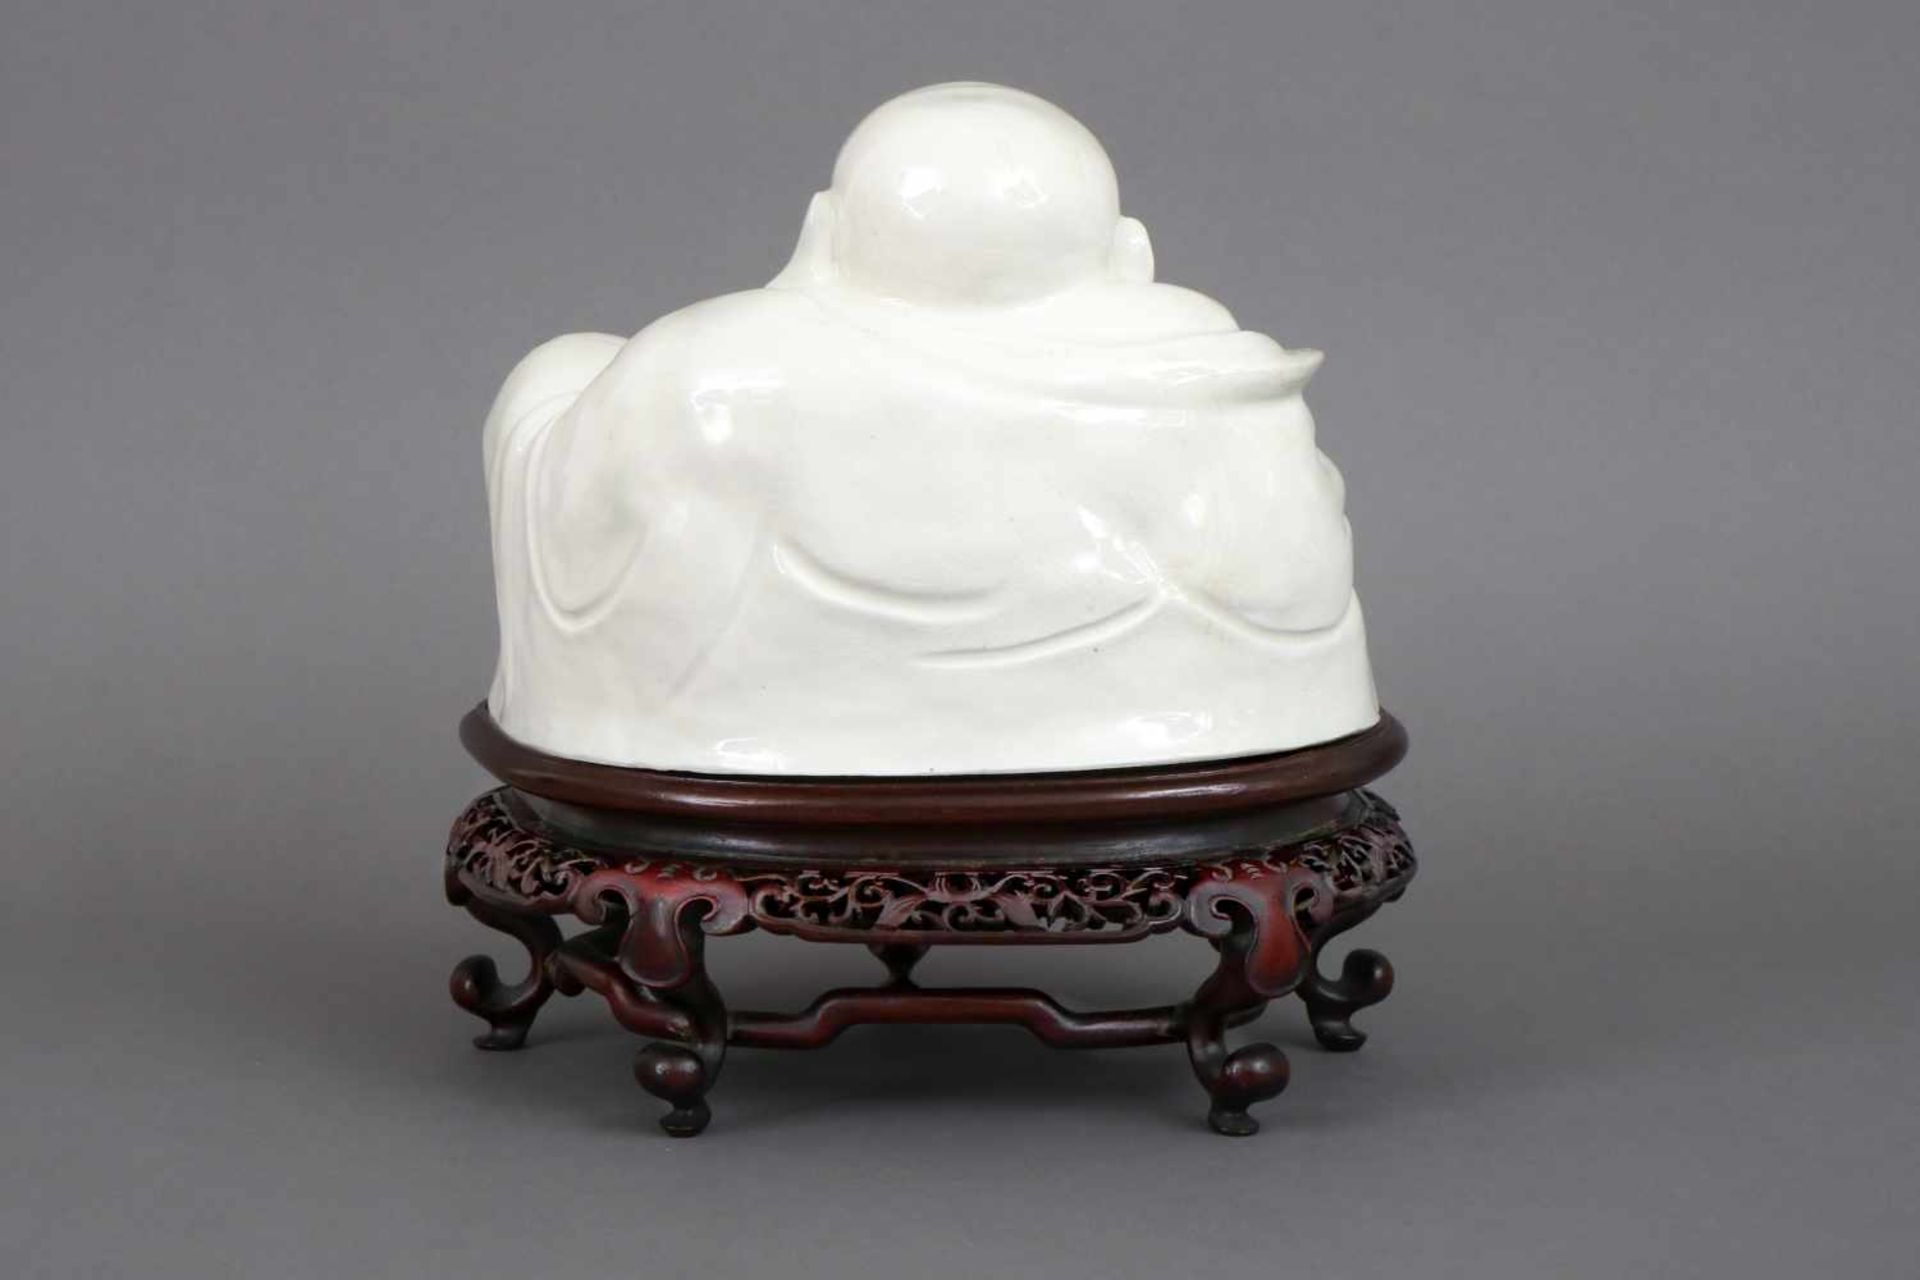 Chinesische blanc-de-Chine Buddhafigurweiß glasiertes Porzellan, späte Qing Dynastie (19. Jhdt.), - Image 2 of 2